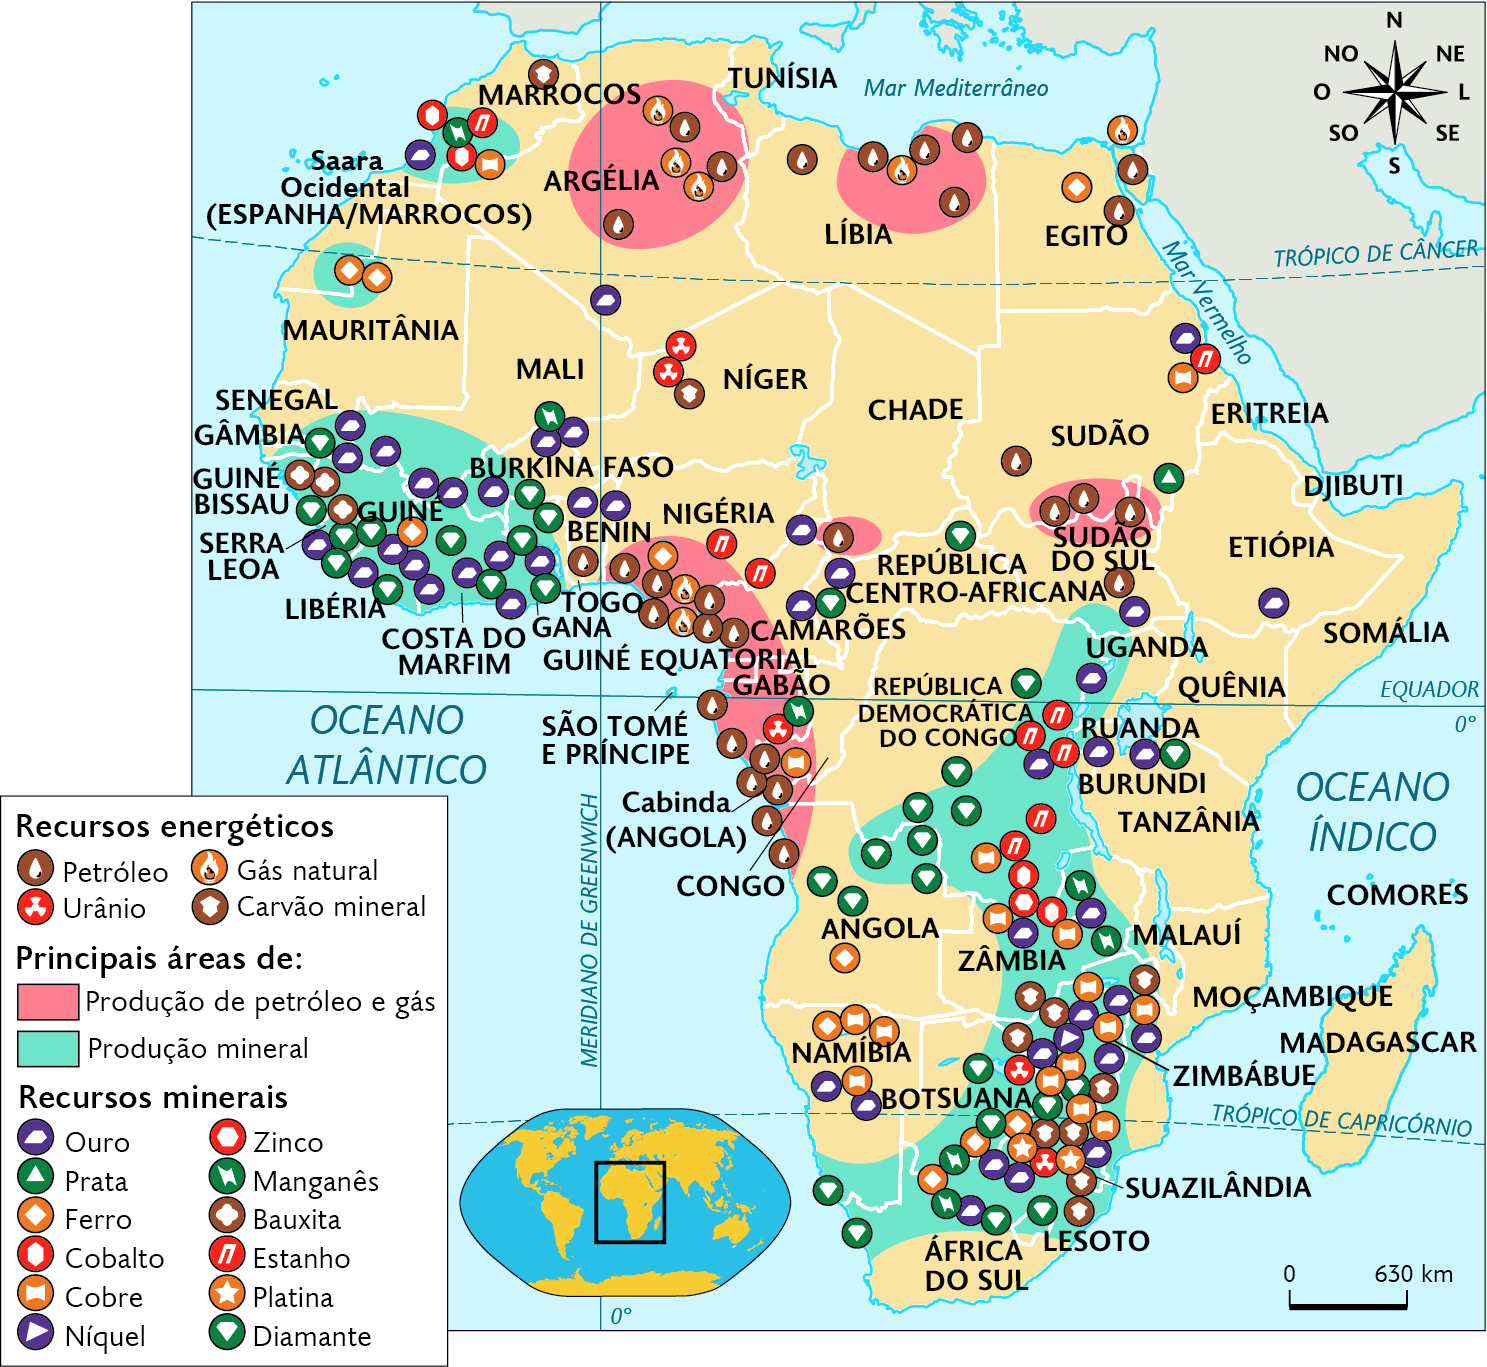 Mapa. Recursos minerais e energéticos na África (2020). Recursos energéticos. Petróleo, urânia, gás natural, carvão mineral: no norte, oeste e sul. Principais áreas de: Produção de petróleo e gás: Argélia, Líbia, e porção oeste com Nigéria, Guiné Equatorial, Gabão e Cabinda (território que pertence à Angola), Angola, Sudão e Sudão do Sul. Produção mineral: Marrocos, Saara Ocidental (território ocupado por Marrocos), Mauritânia, porção oeste com Guiné, Serra Leoa, Costa do Marfim, Burkina Faso, Mali, Gâmbia, Guiné Bissau, Togo, e centro-sul com Uganda, República Democrática do Congo, Zâmbia, Botsuana, Suazilândia, Lesoto, Namíbia e África do Sul. Recursos minerais: Ouro, Prata, Ferro, Cobre, Cobalto, Níquel, Zinco, Manganês, Bauxita, Platina, Estanho, Diamante, encontrados principalmente nas áreas citadas. Na parte inferior, mapa de localização, planisfério destacando a região descrita. No canto superior direito, a rosa dos ventos e na parte inferior, a escala:  630 quilômetros por centímetro.